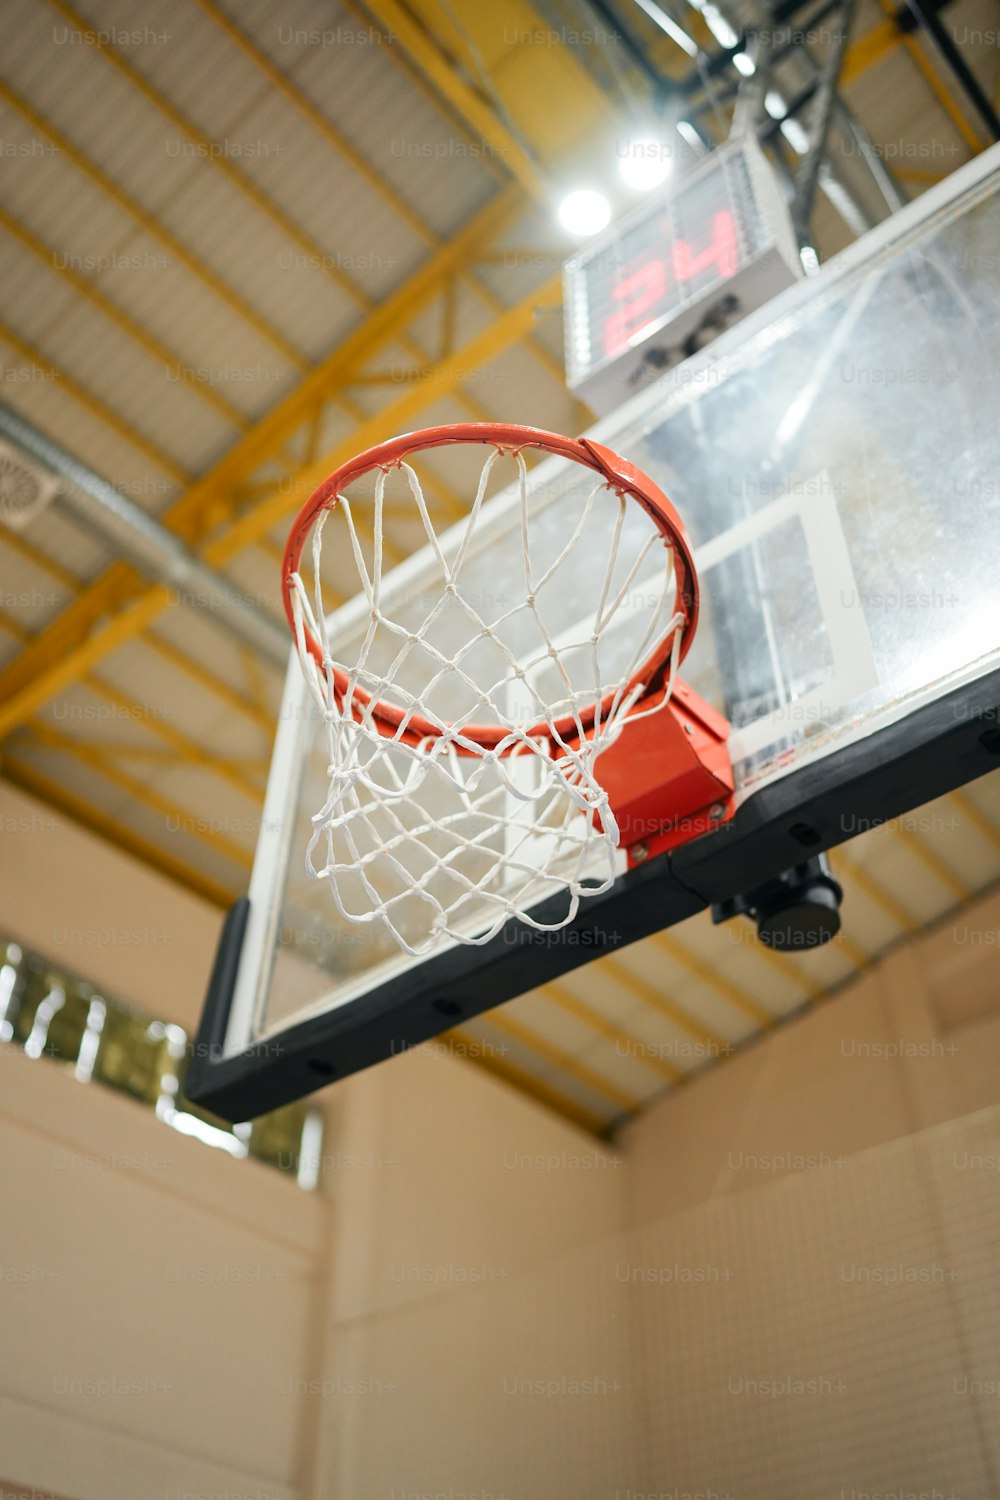 um aro de basquete com uma bola de basquete dentro dele